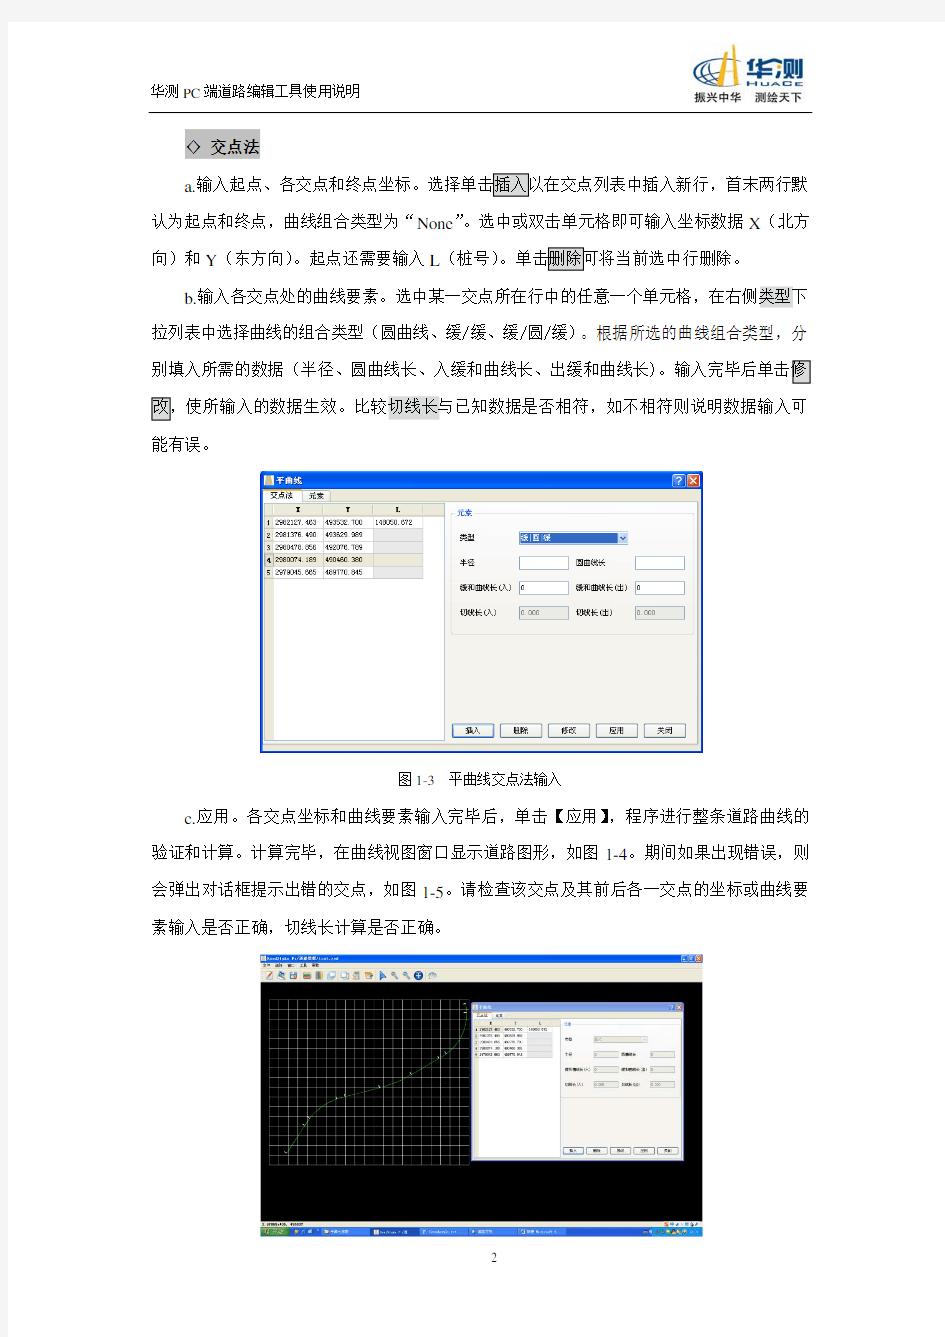 华测PC端道路编辑工具使用说明201208